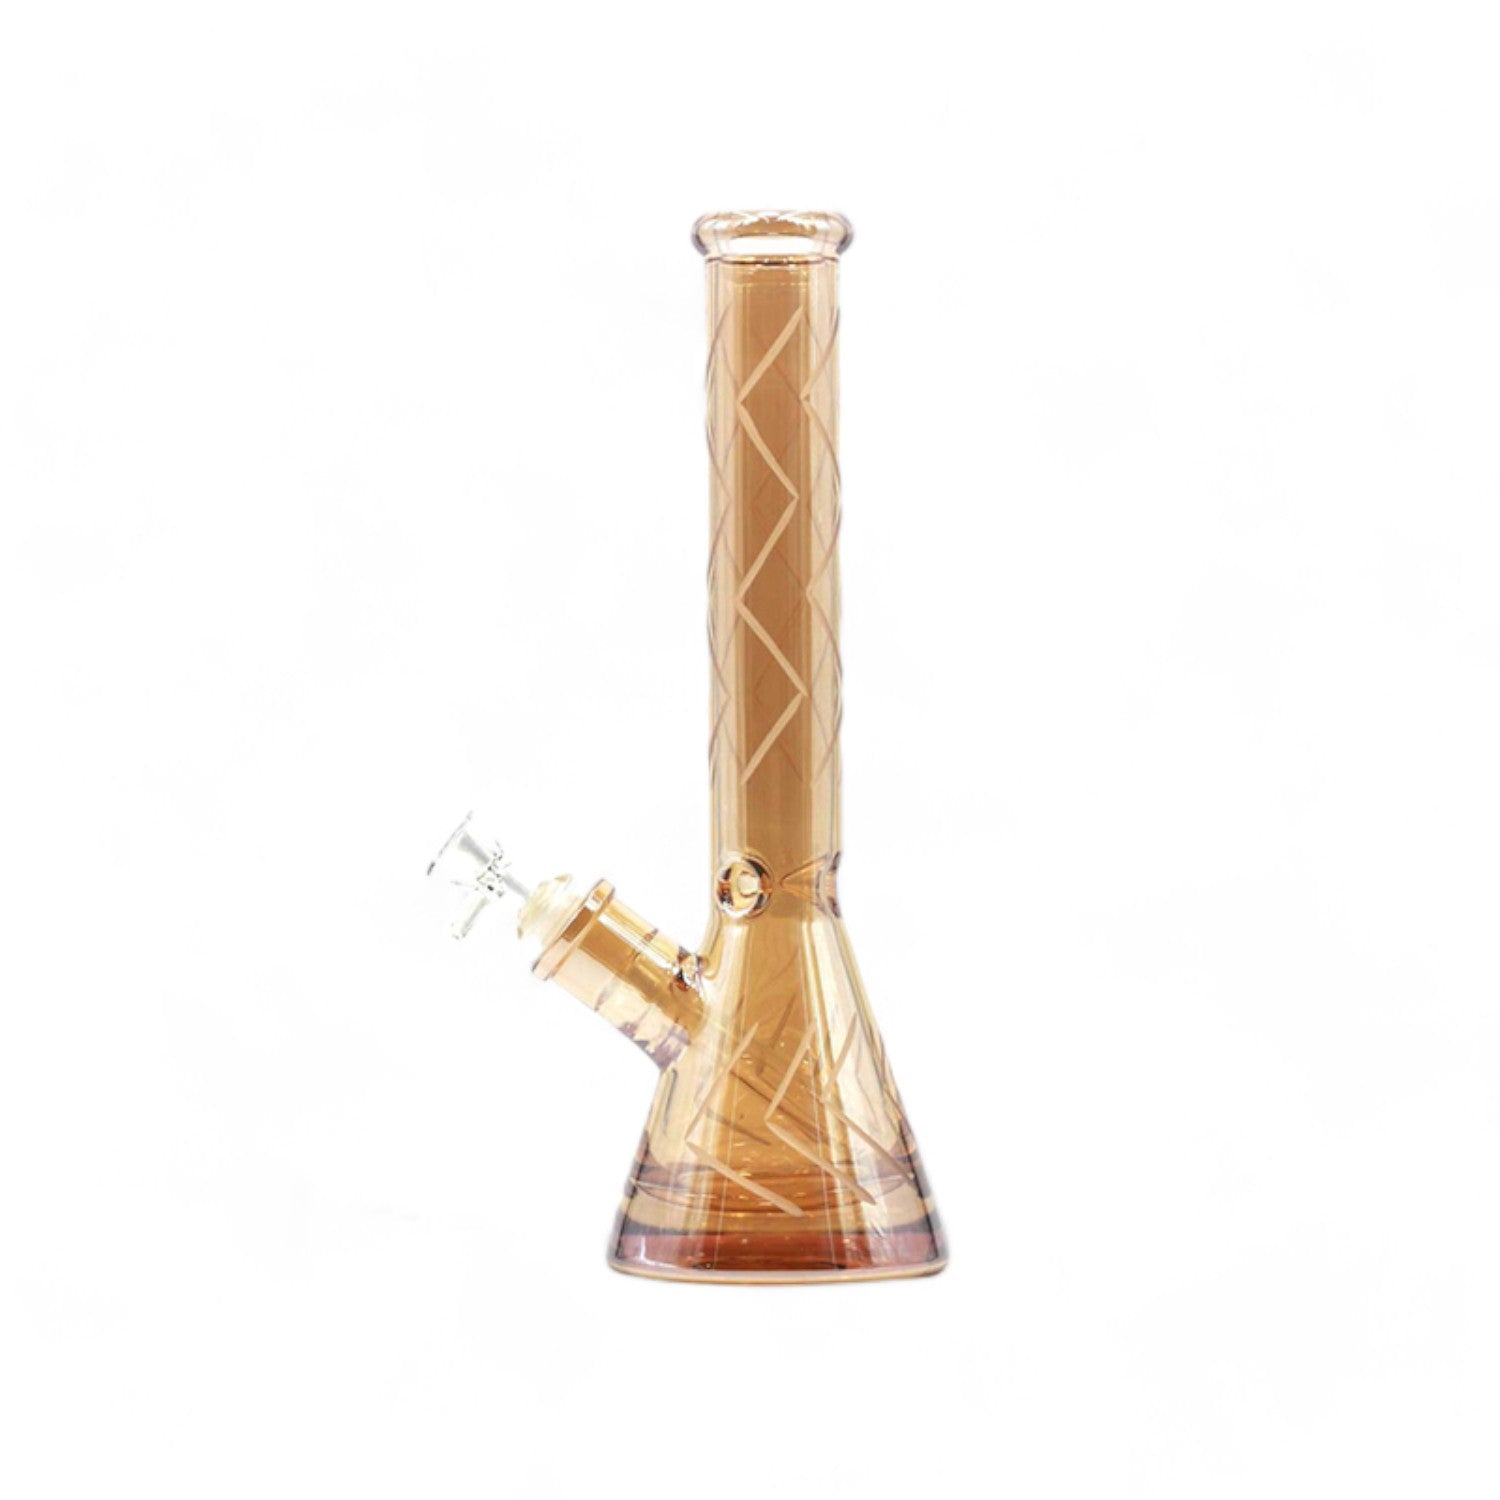 Eindrucksvolle 'Zig Zag' Beaker-Glas-Wasserpfeife mit 32 cm Höhe und 18,8 mm Schliff, ausgestattet mit Kickloch und Percolator für eine verfeinerte Raucherfahrung